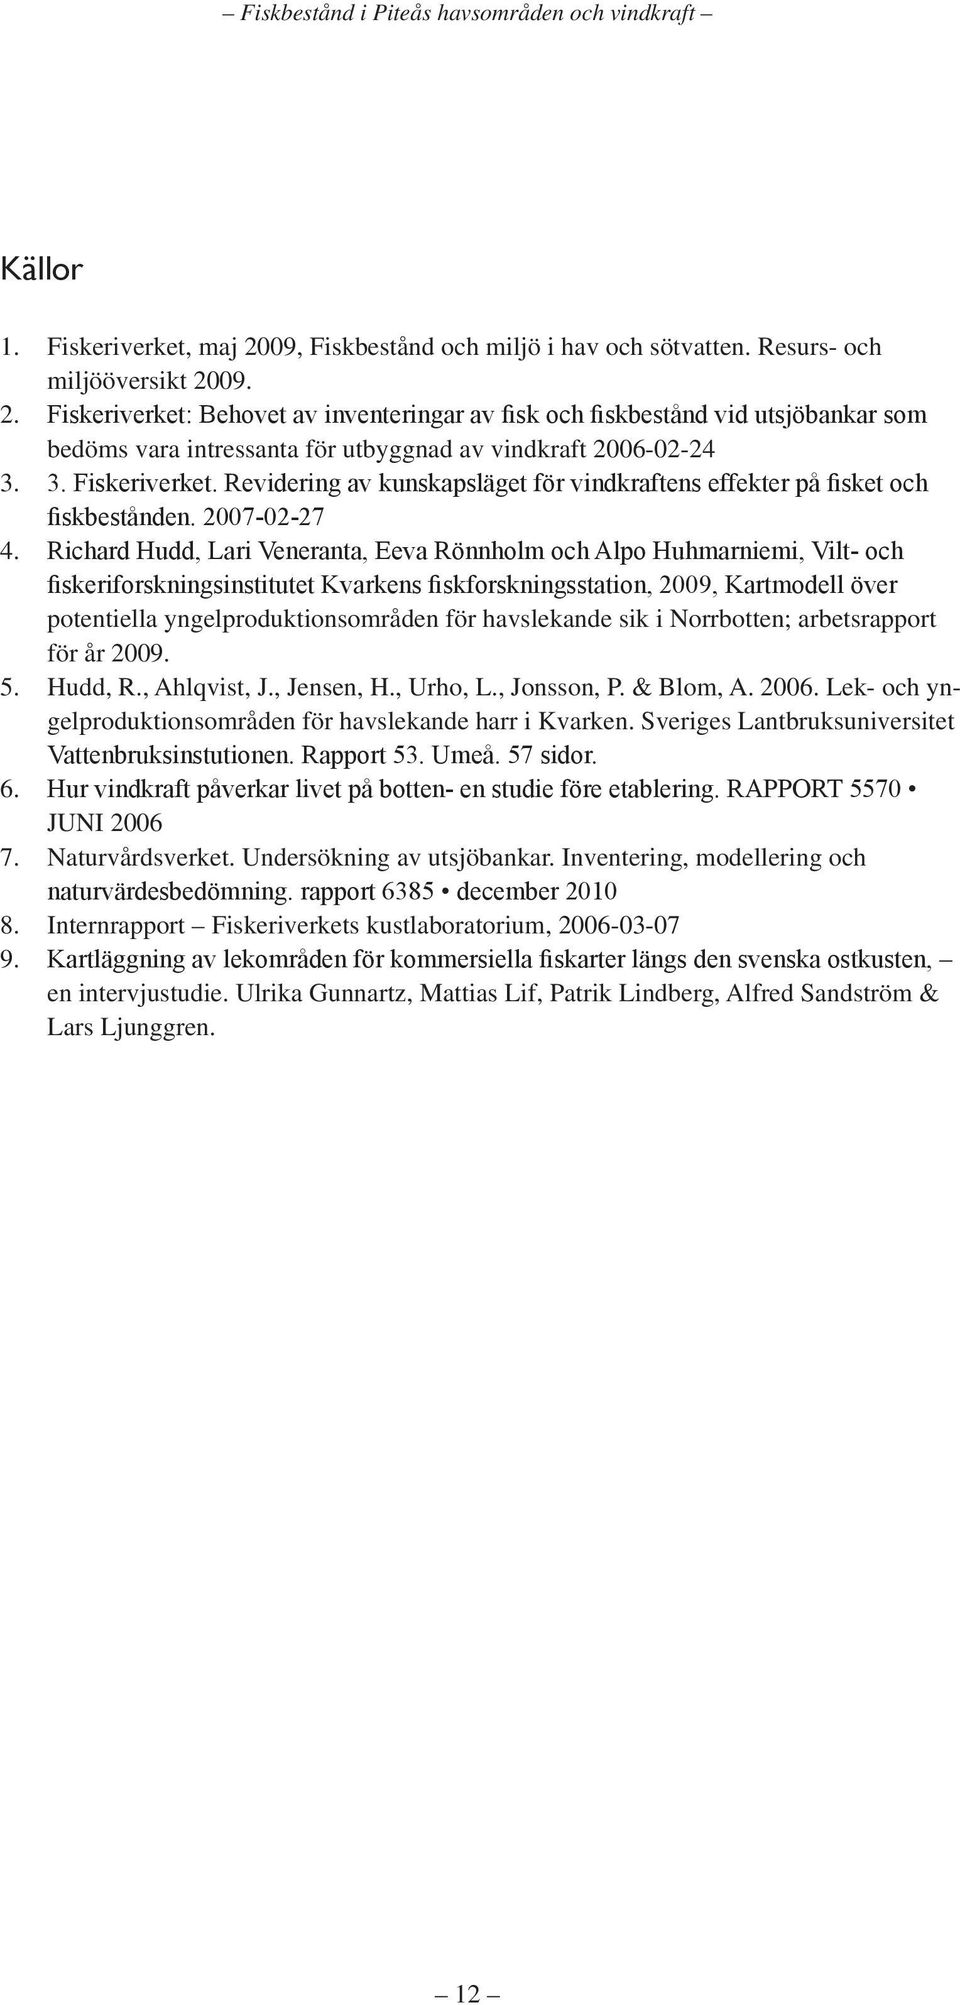 Richard Hudd, Lari Veneranta, Eeva Rönnholm och Alpo Huhmarniemi, Vilt- och fiskeriforskningsinstitutet Kvarkens fiskforskningsstation, 2009, Kartmodell över potentiella yngelproduktionsområden för